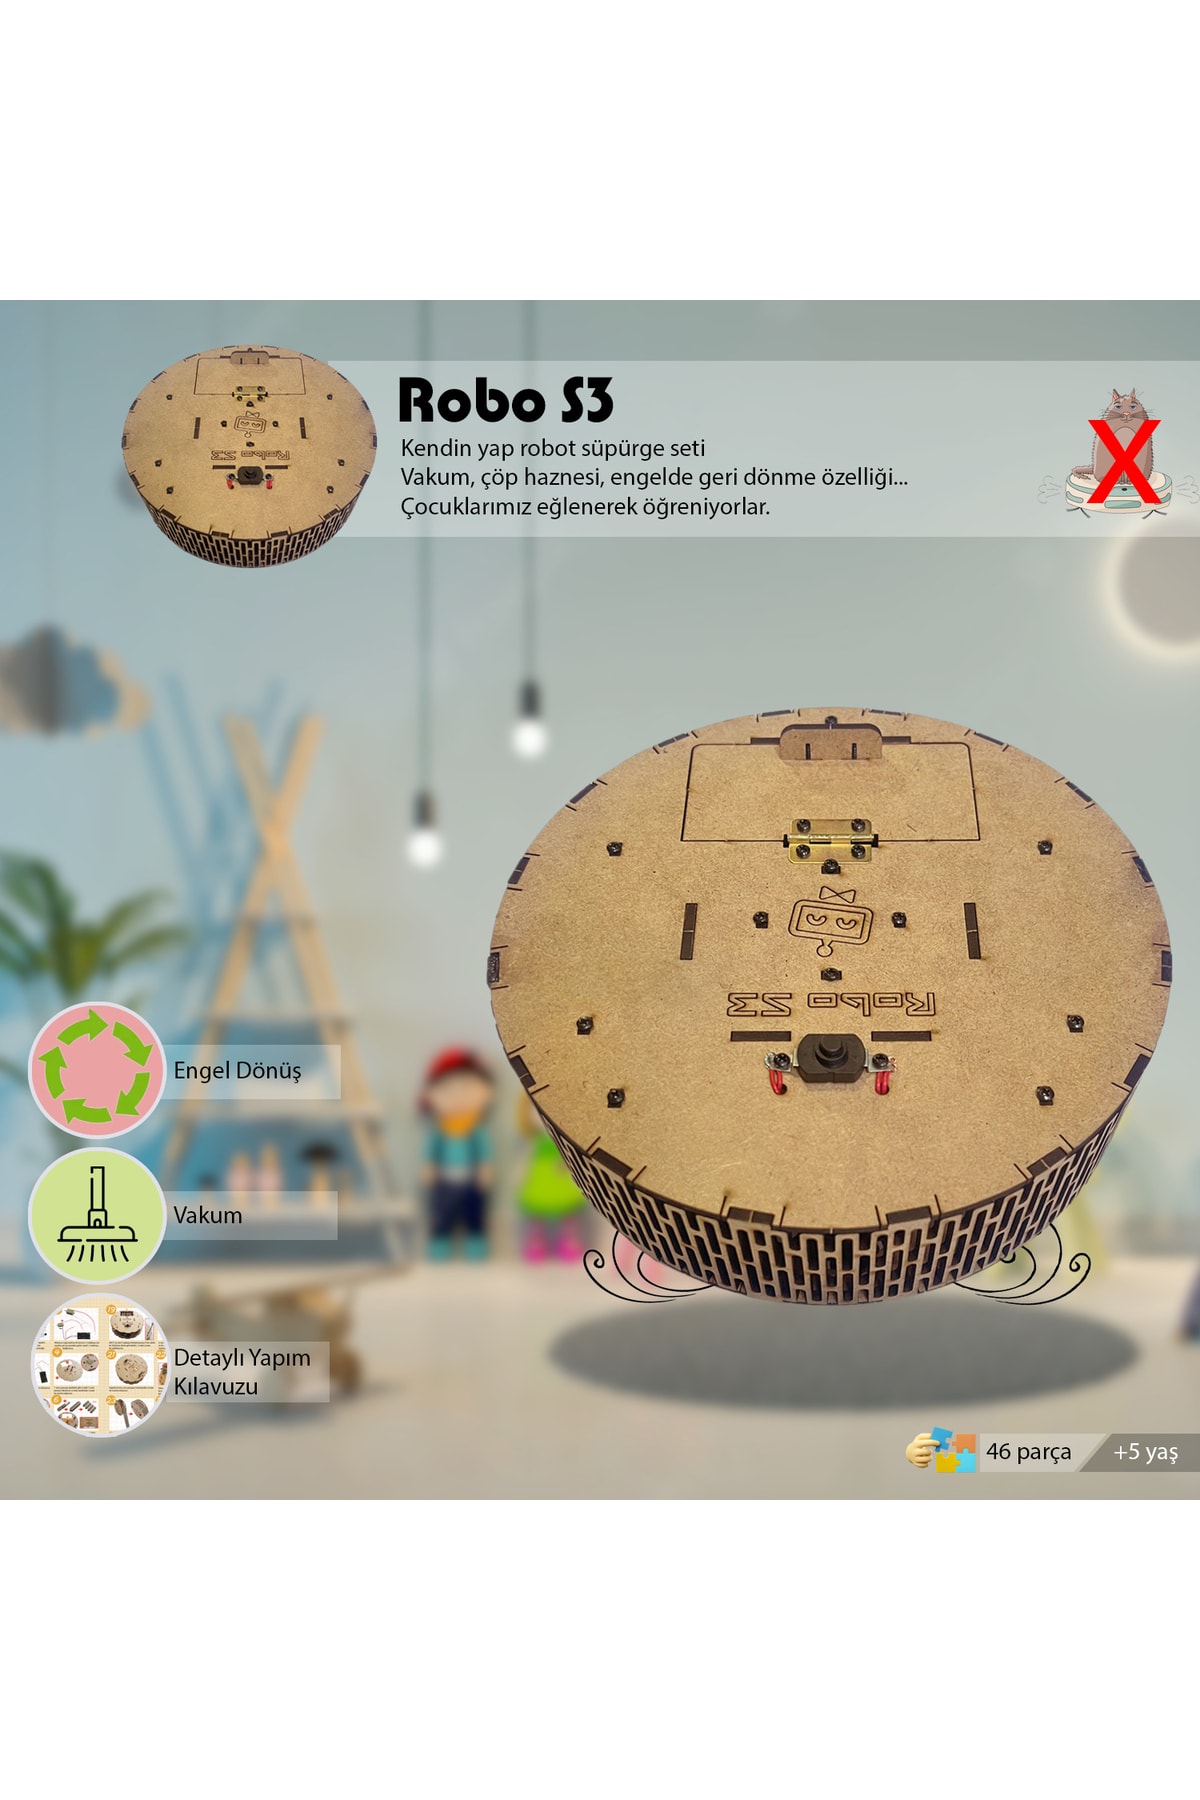 robotikşeyler Robo S3 Robot Süpürge Kendin Yap Set